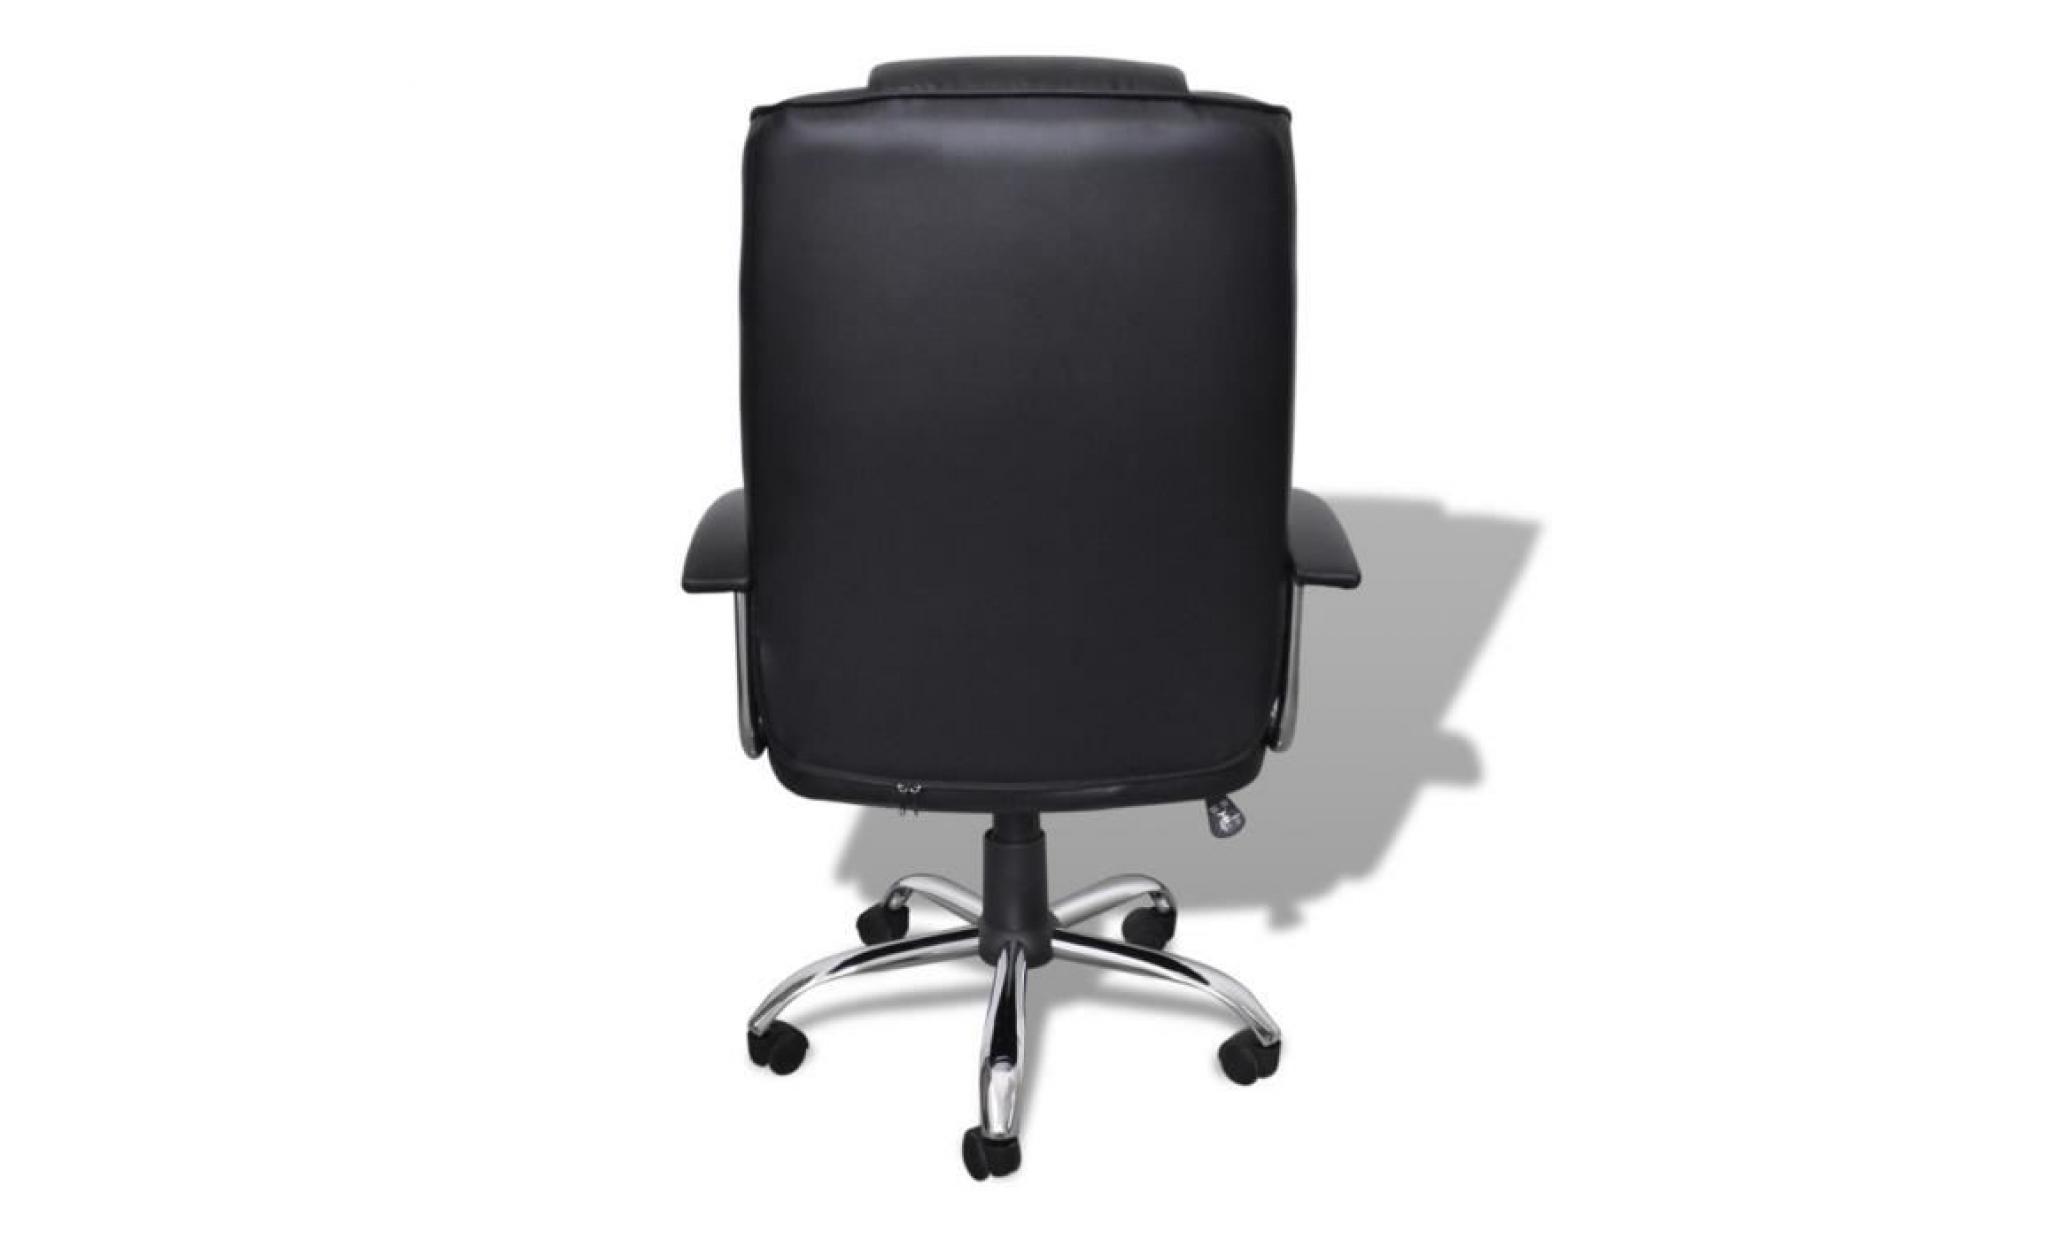 fauteuil de bureau ergonomique en similicuir   hauteur réglage   360 degrés pivotant   style d'affaire   chaise de bureau crème pas cher